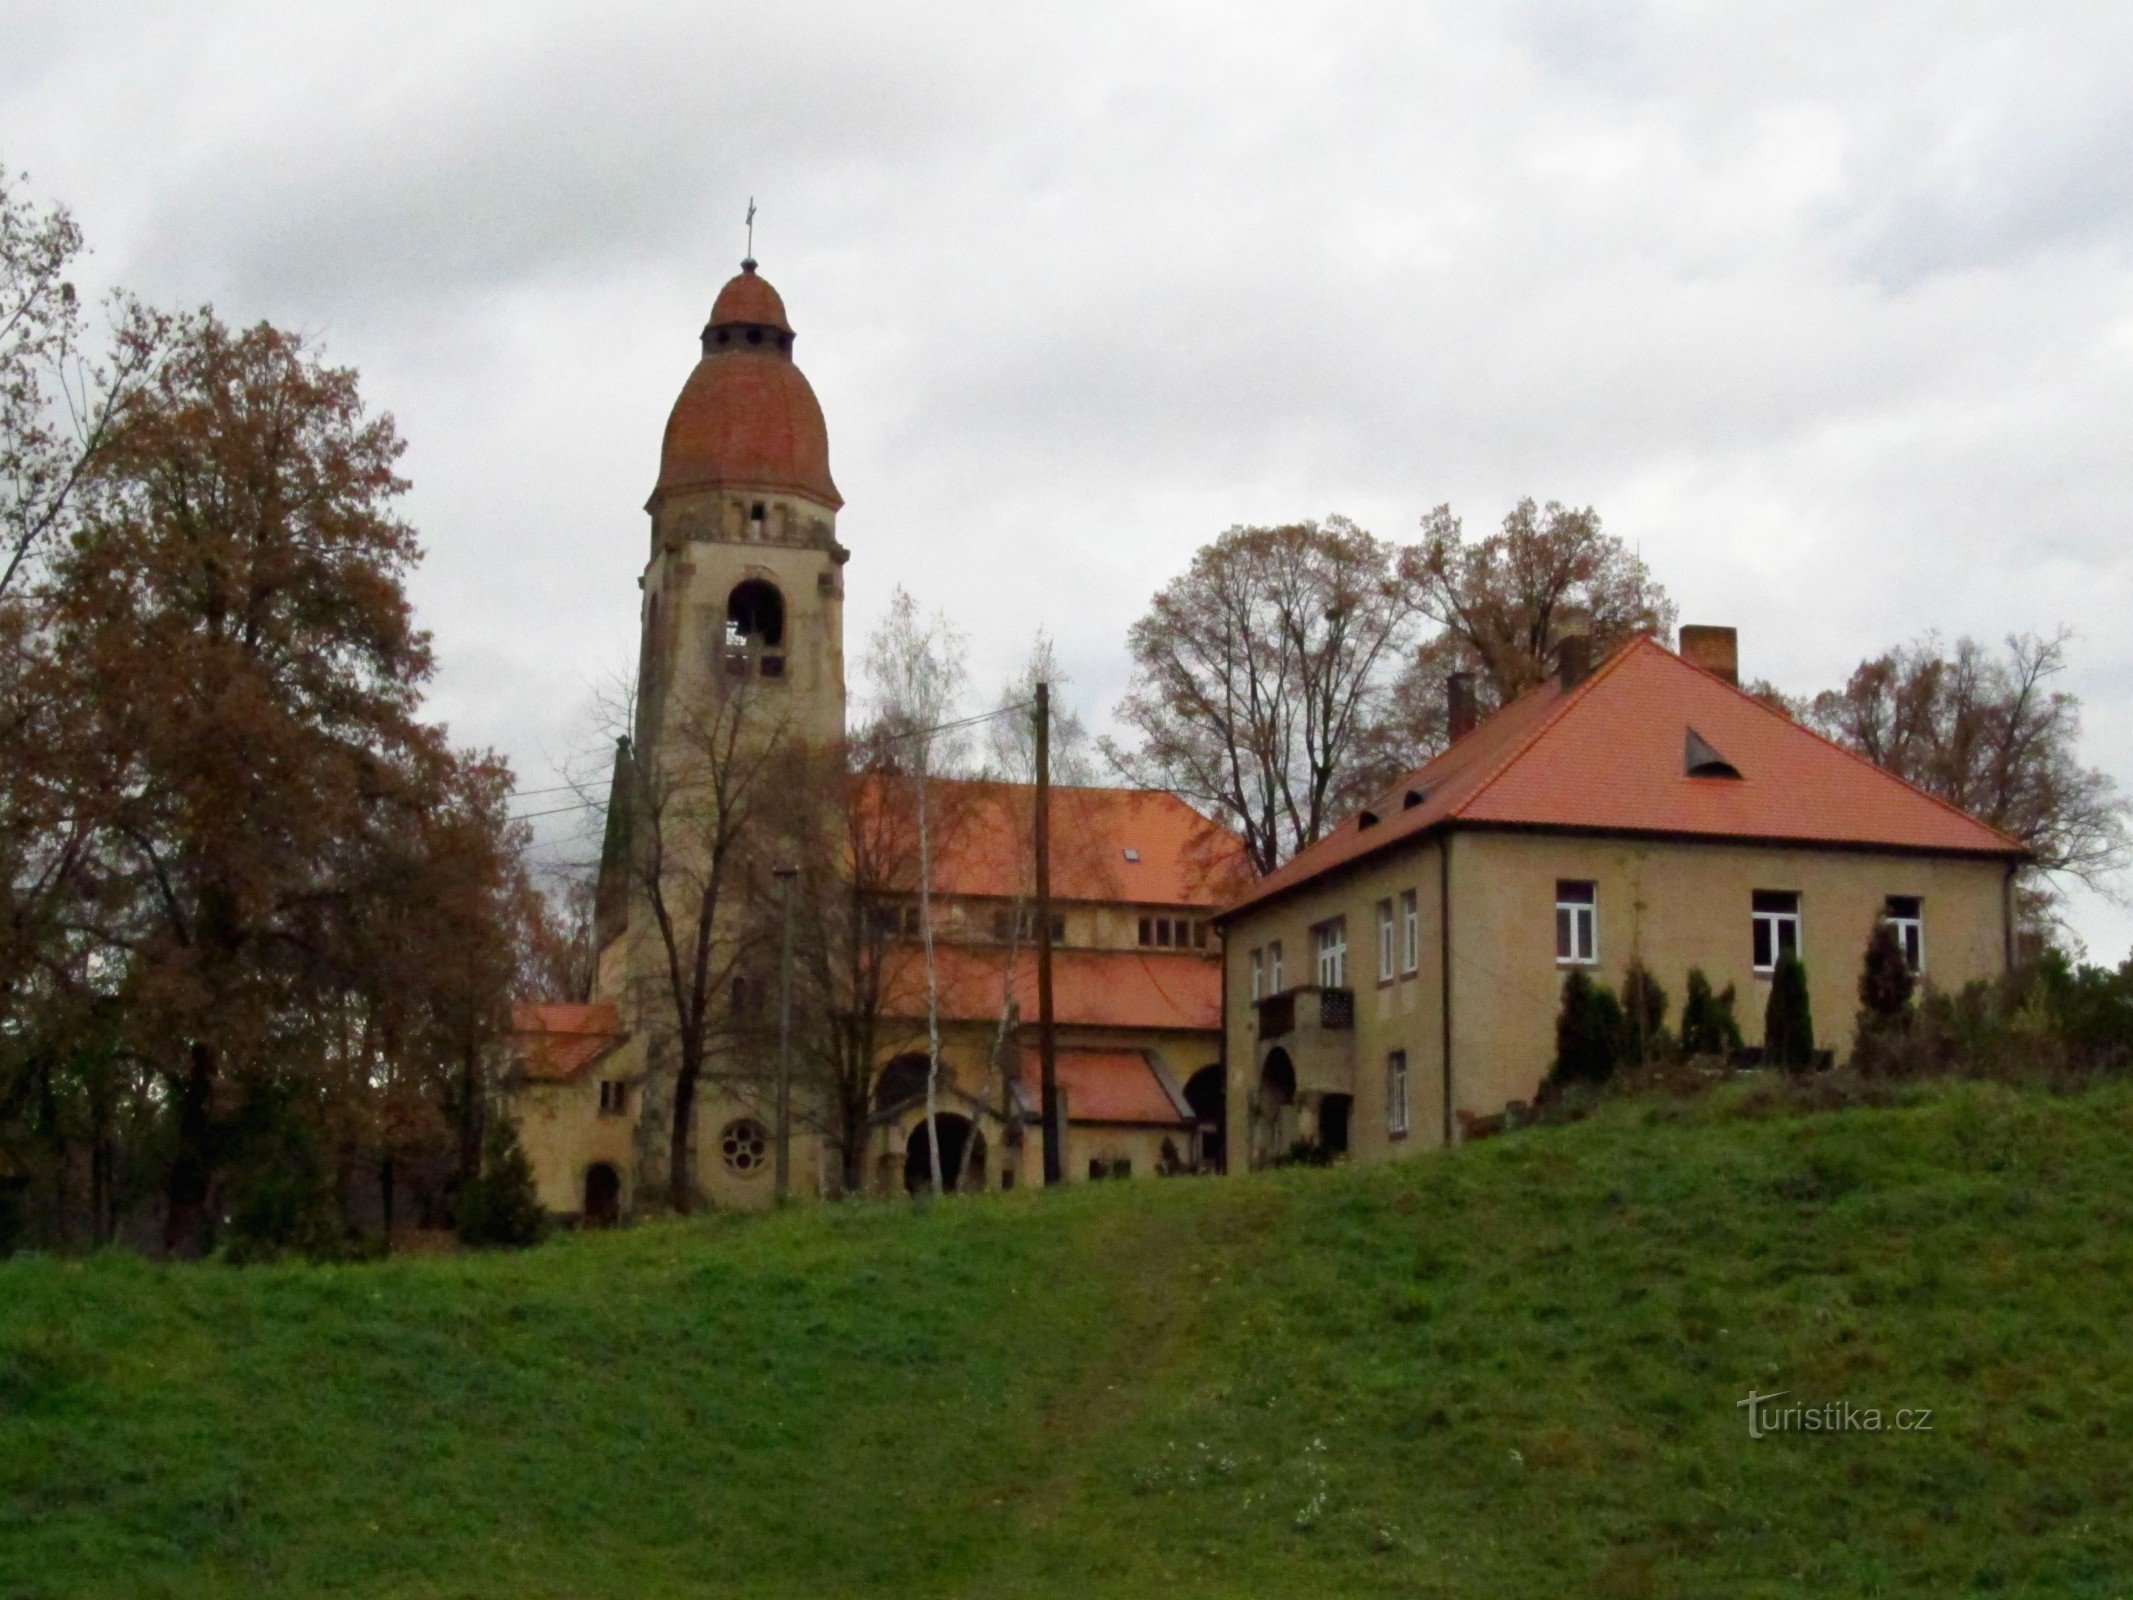 01 シュチェホヴィツェ、ネポムクの聖ヨハネ教会と牧師館